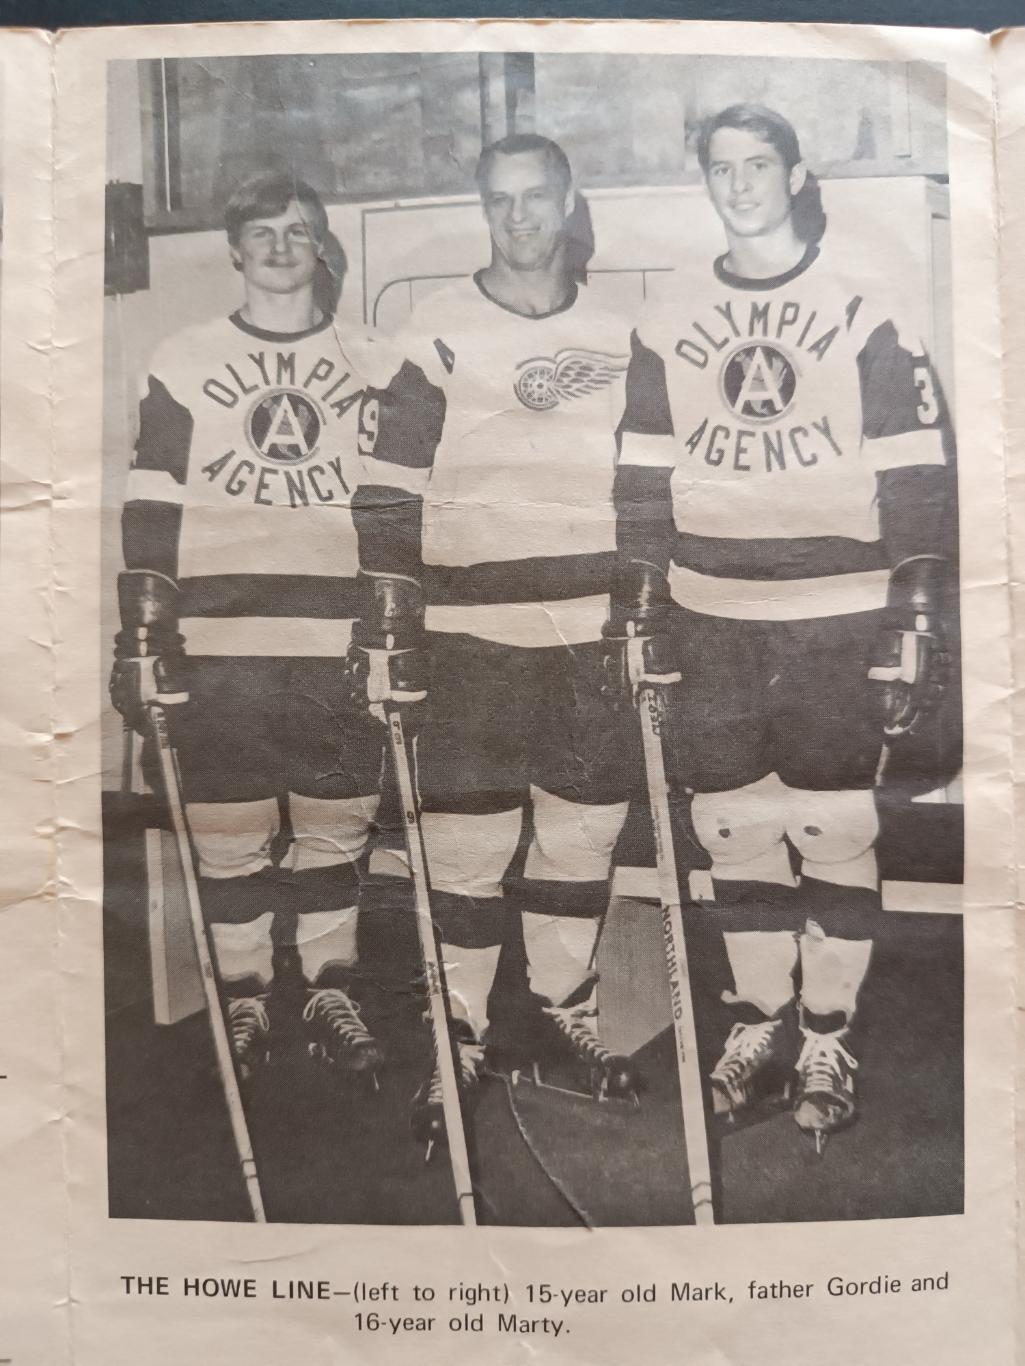 ПРОГРАММА МАТЧА НХЛ ДЕТРОИТ ЮНИОРЫ А 1971 FEB.17 DETROIT VS. JUNIOR A PROGRAM 4